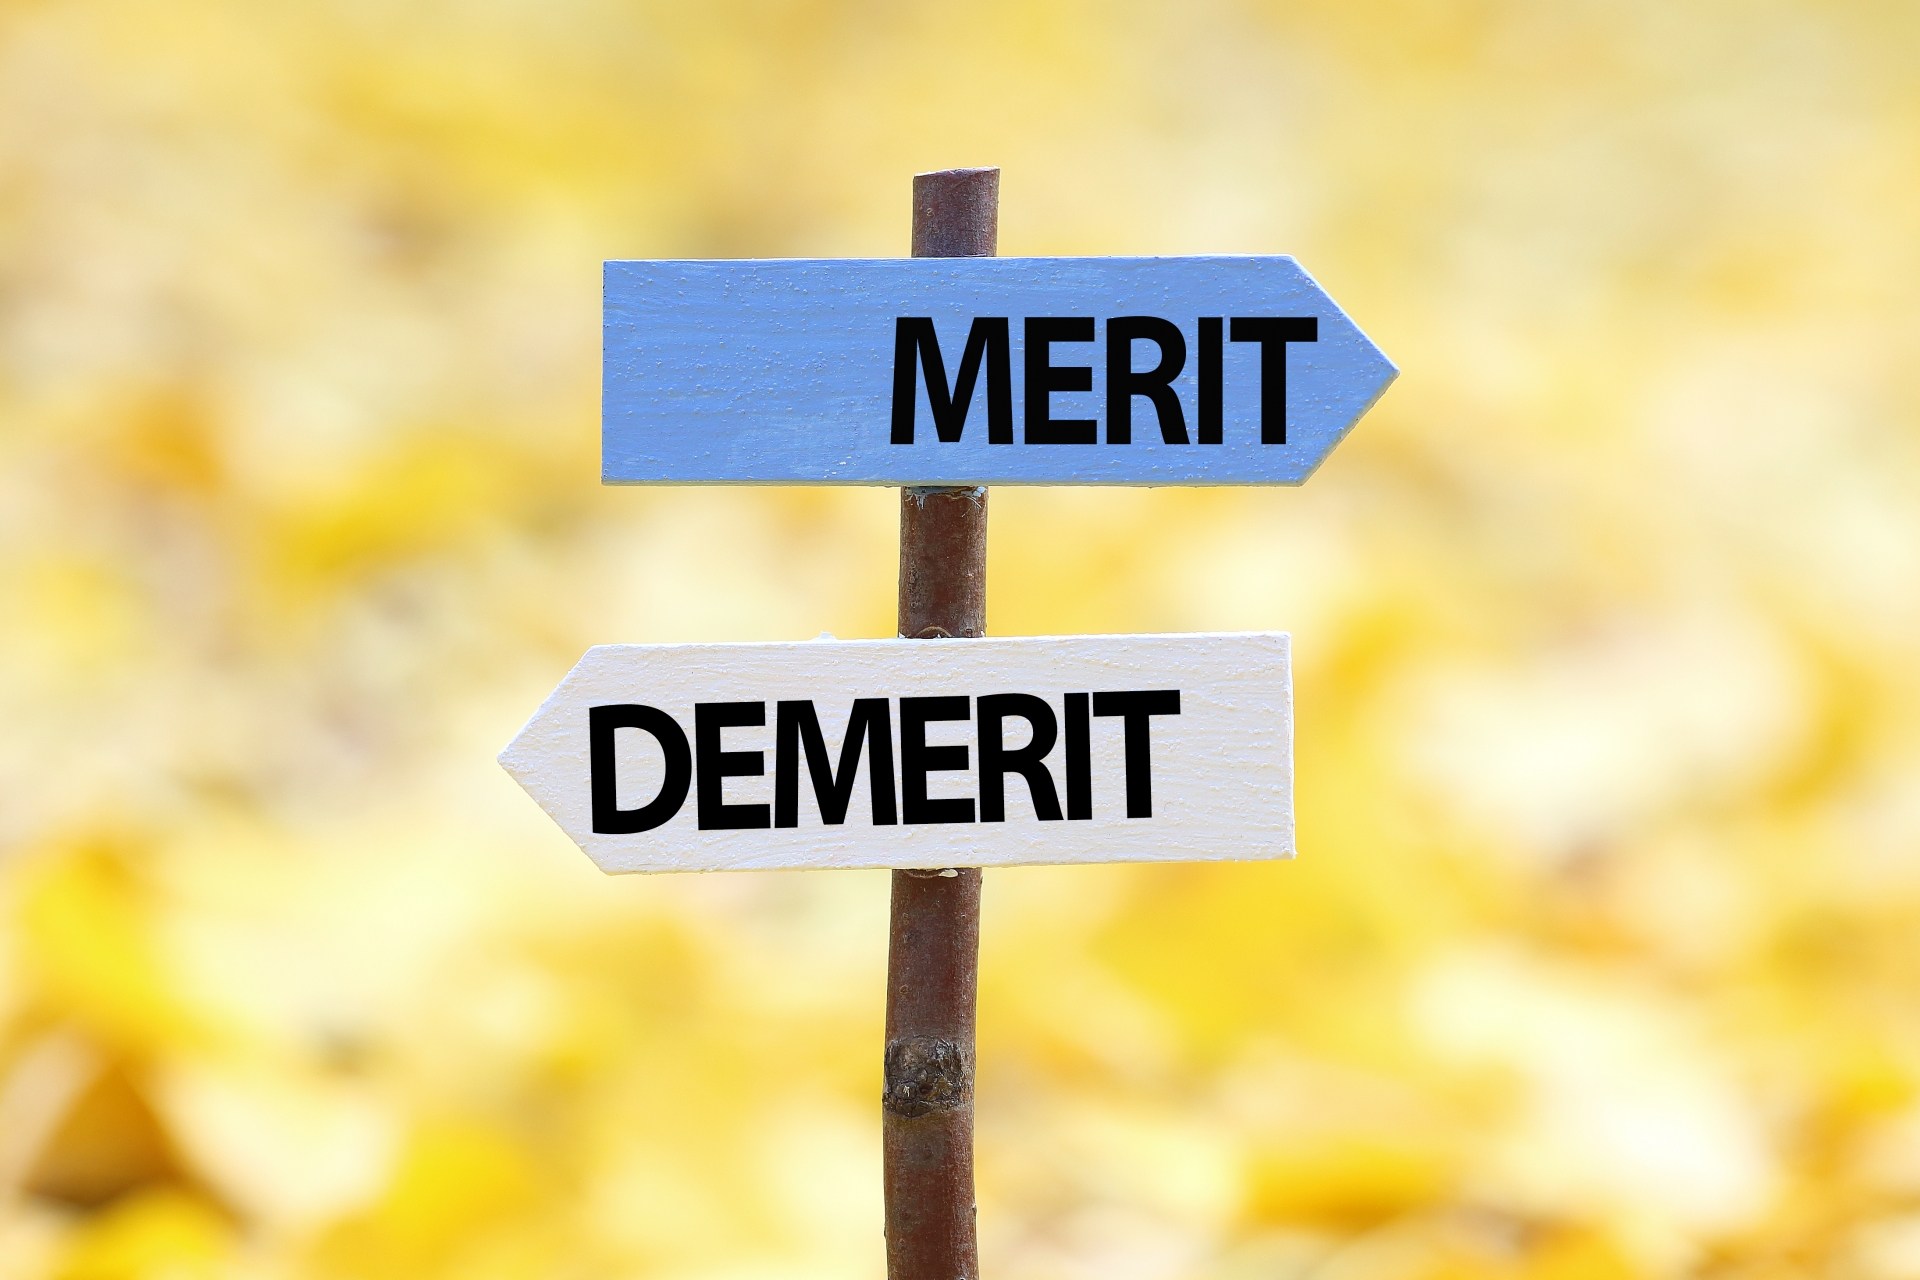 merit、demeritと書かれたイラスト